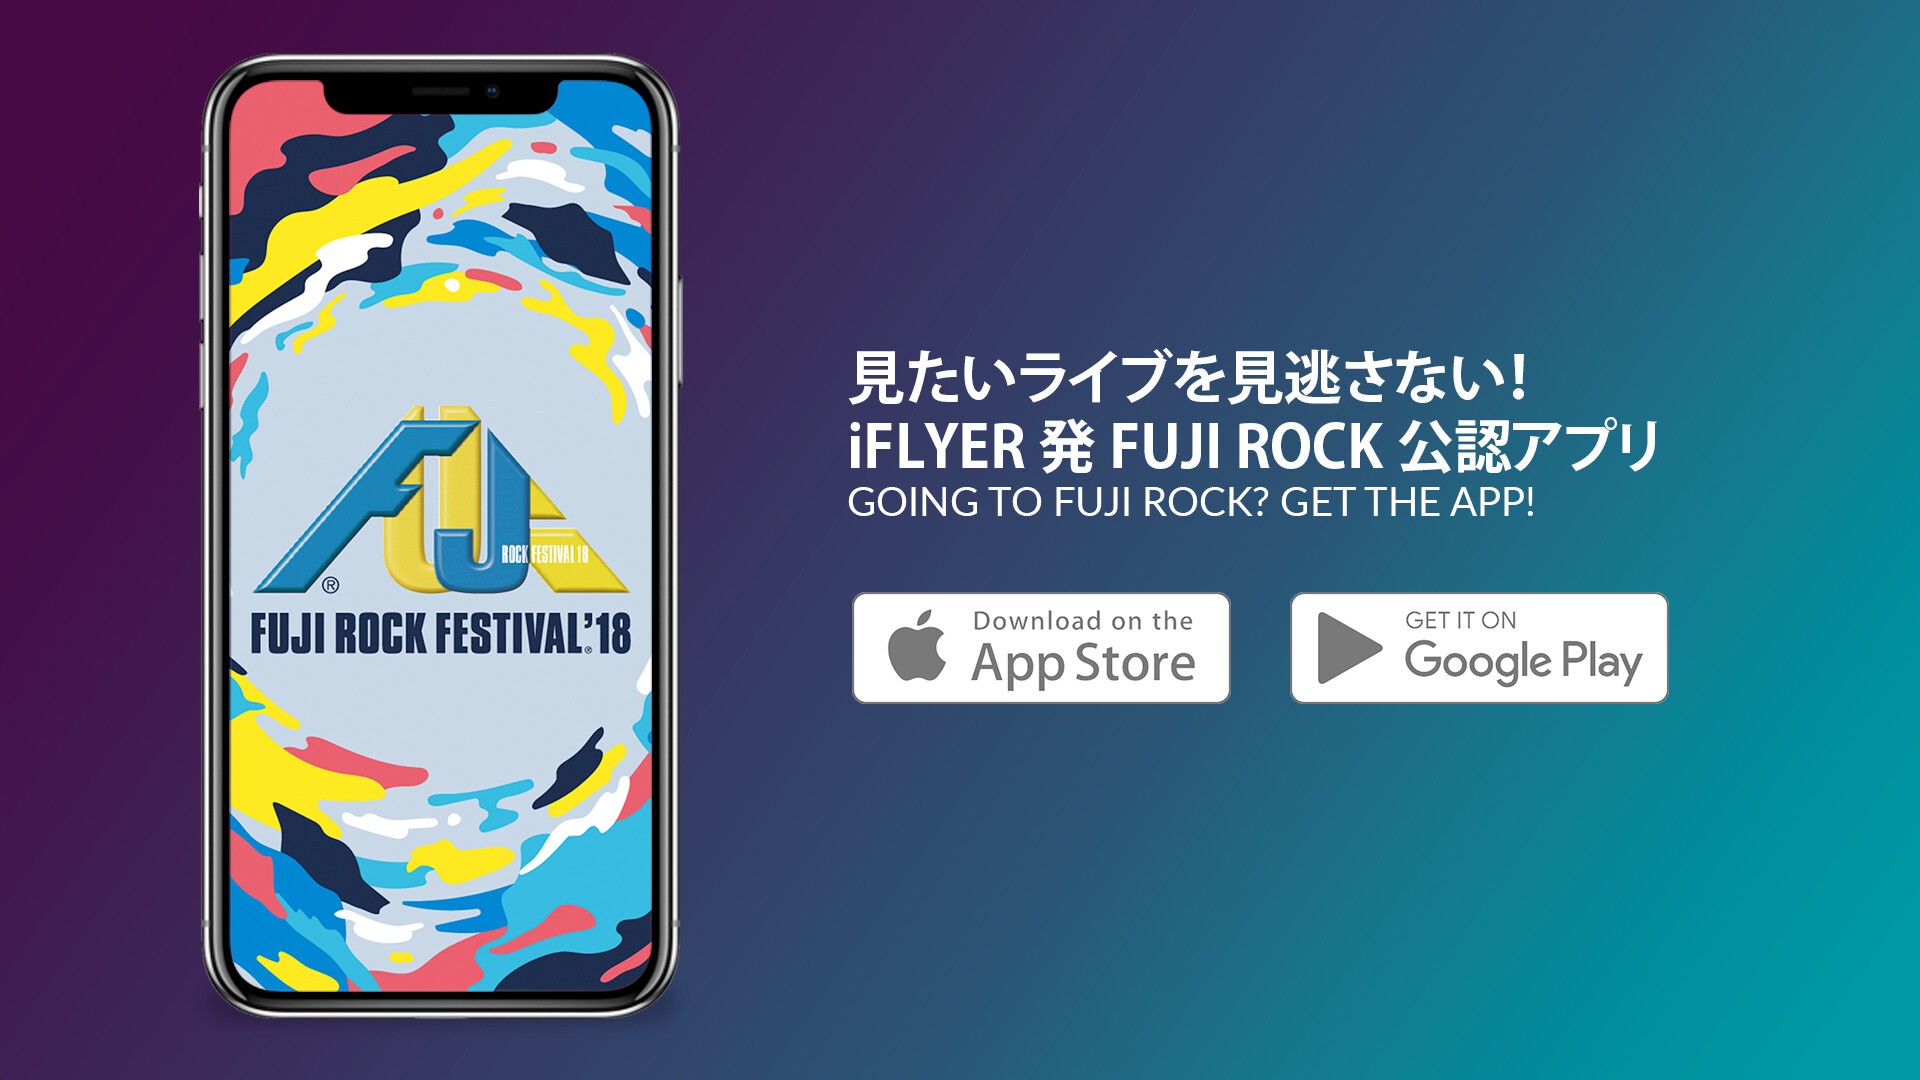 Iflyer Fuji Rock Festival 18 昨年度使いやすいと大好評だったフジロックアプリ 今年もリリース